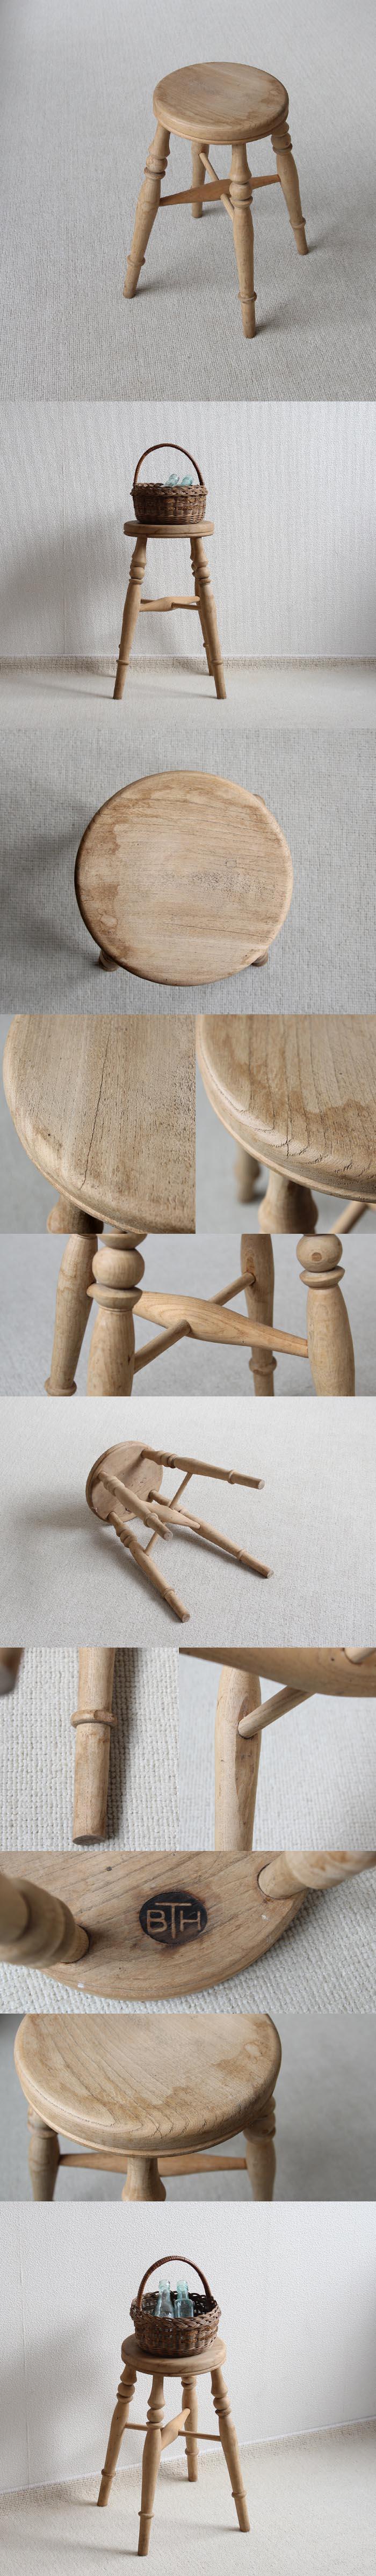 イギリス アンティーク スツール 木製椅子 カントリー 無垢材 アトリエ 家具「ナチュラル」V-887